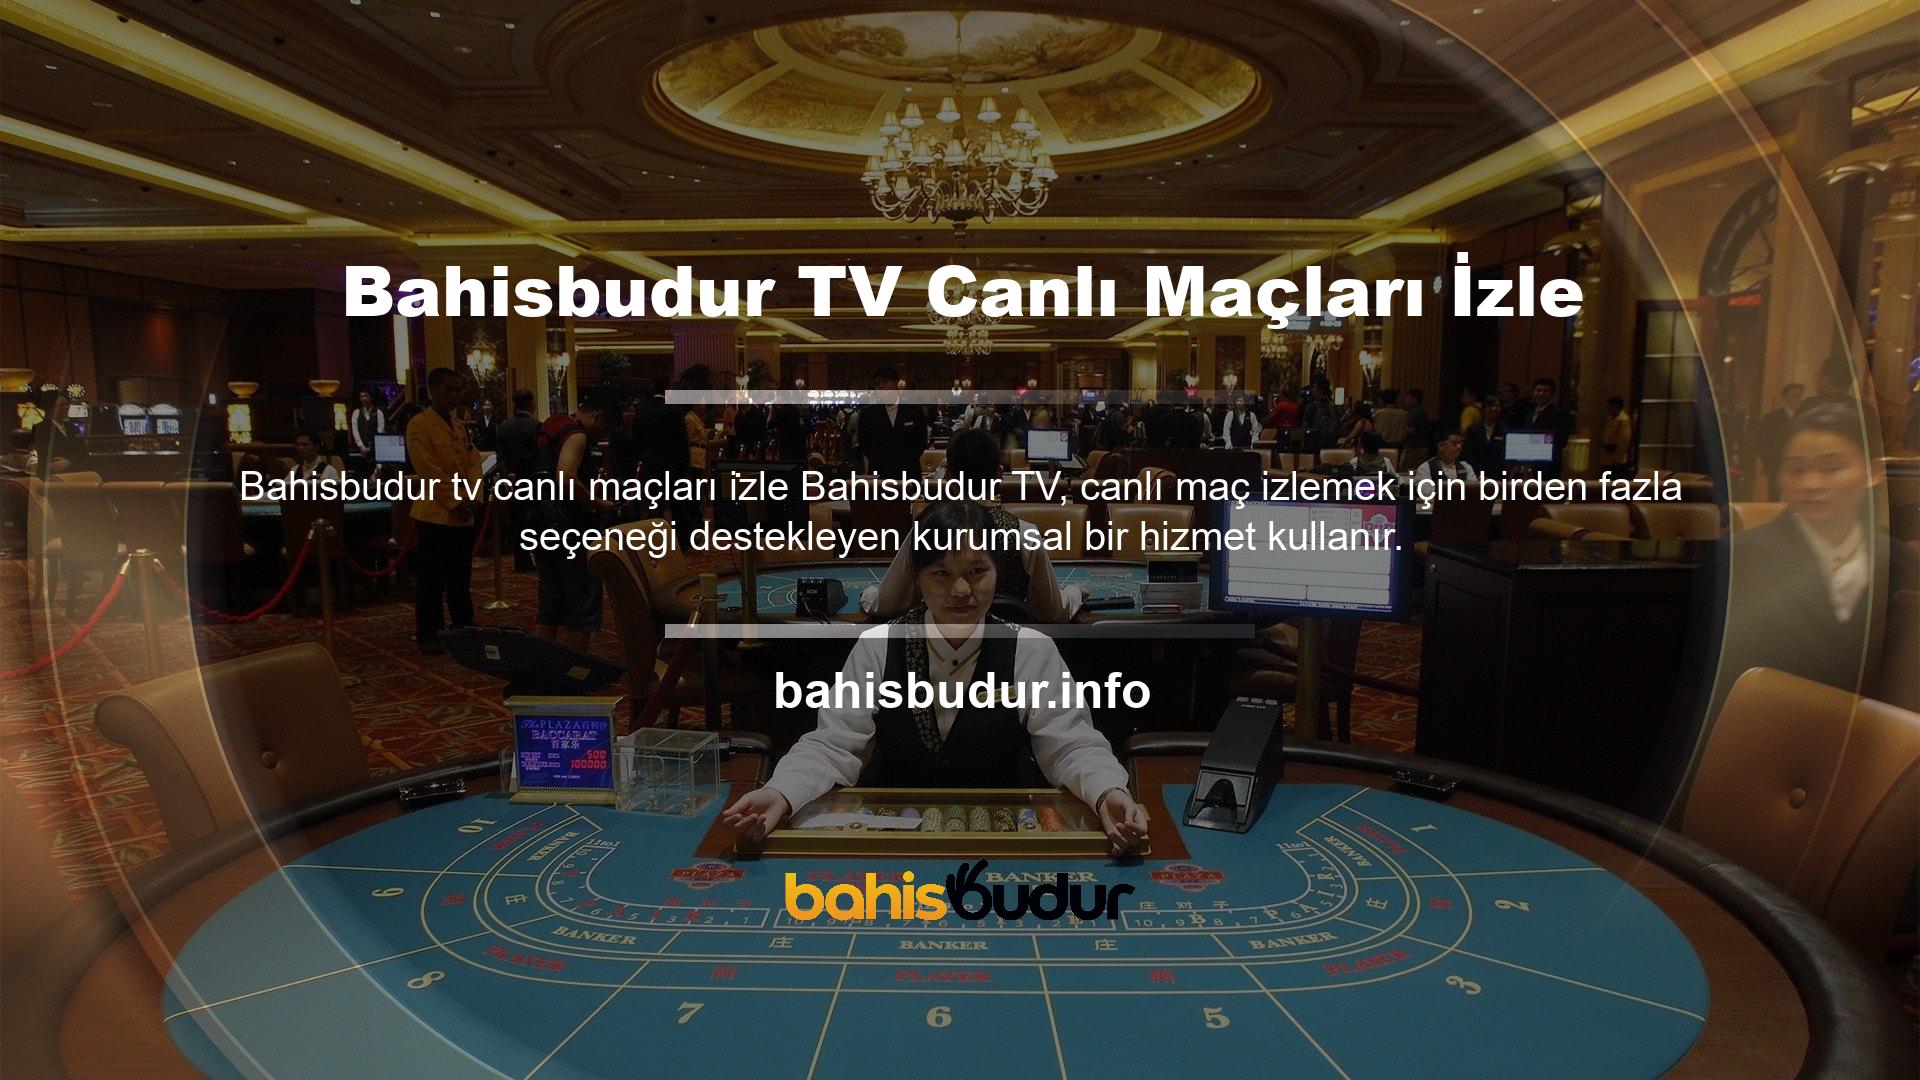 Özellikle Bahisbudur TV canlı maçları izle bu kurum için site kesinlikle güvenilir bir altyapı sunar, bu nedenle dikkatiniz dağılmadan temiz görme şansına sahipsiniz